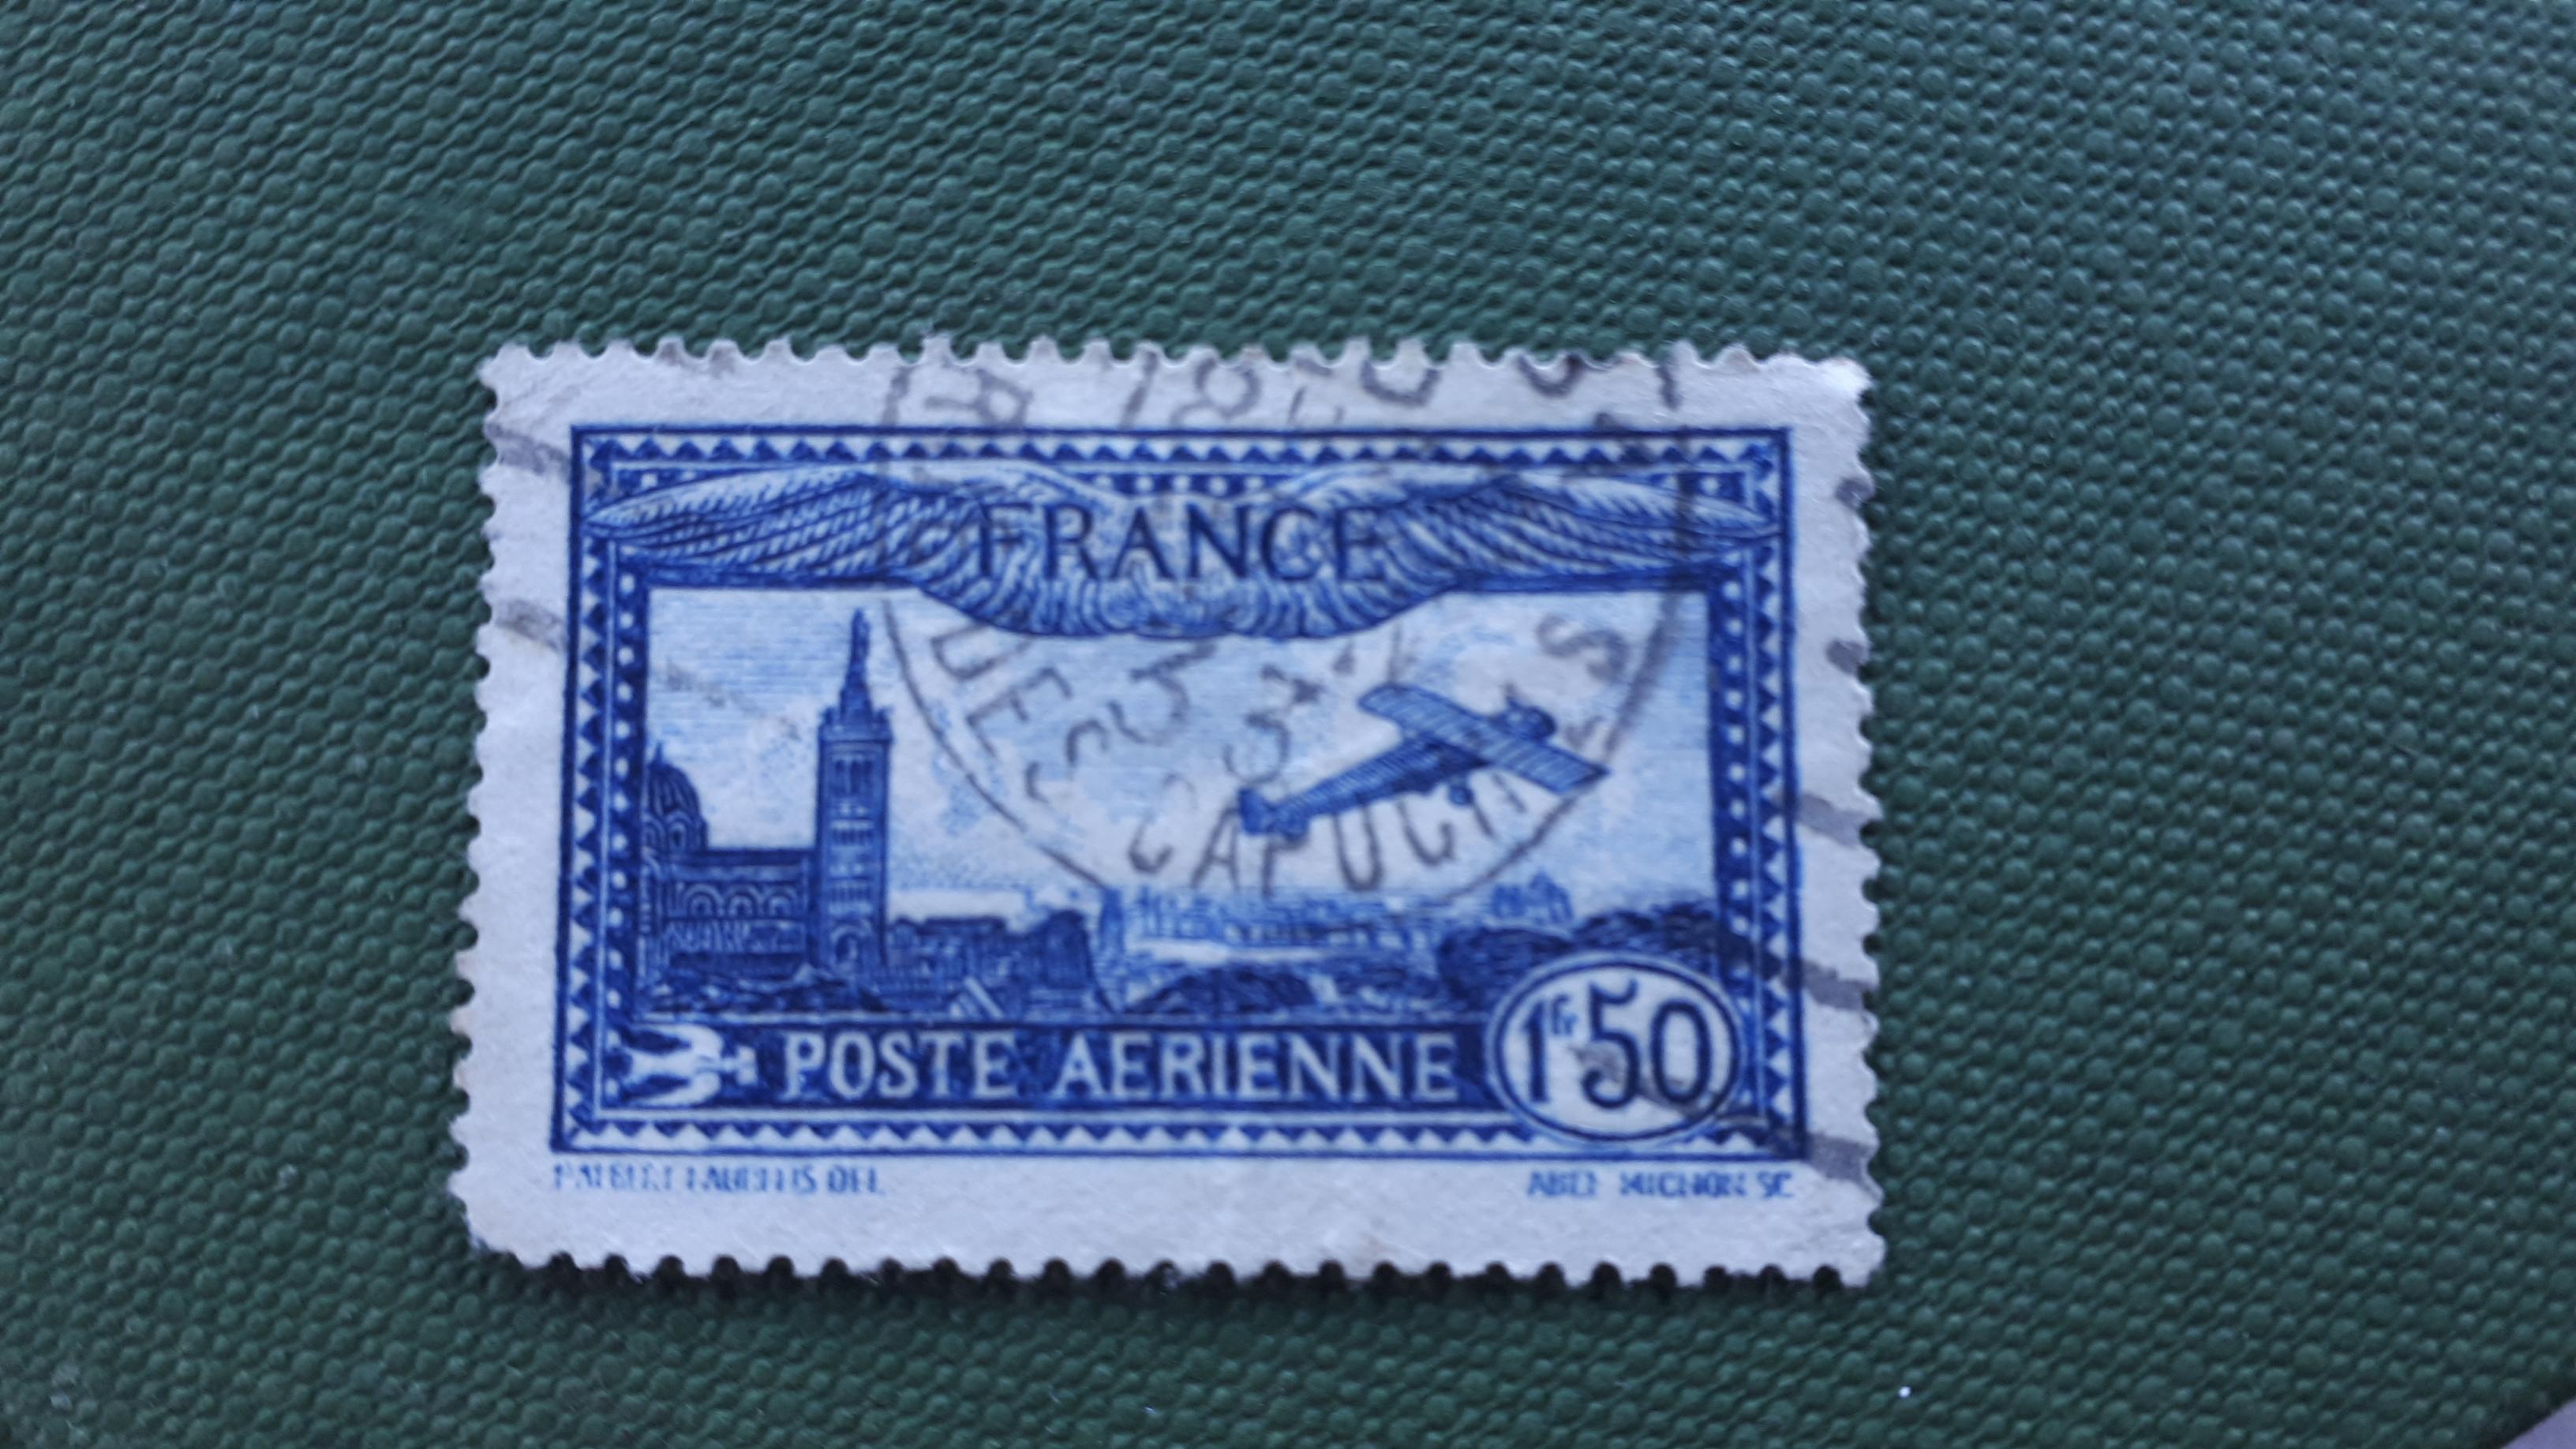 51047 - Francobollo Poste aerienne timbrato